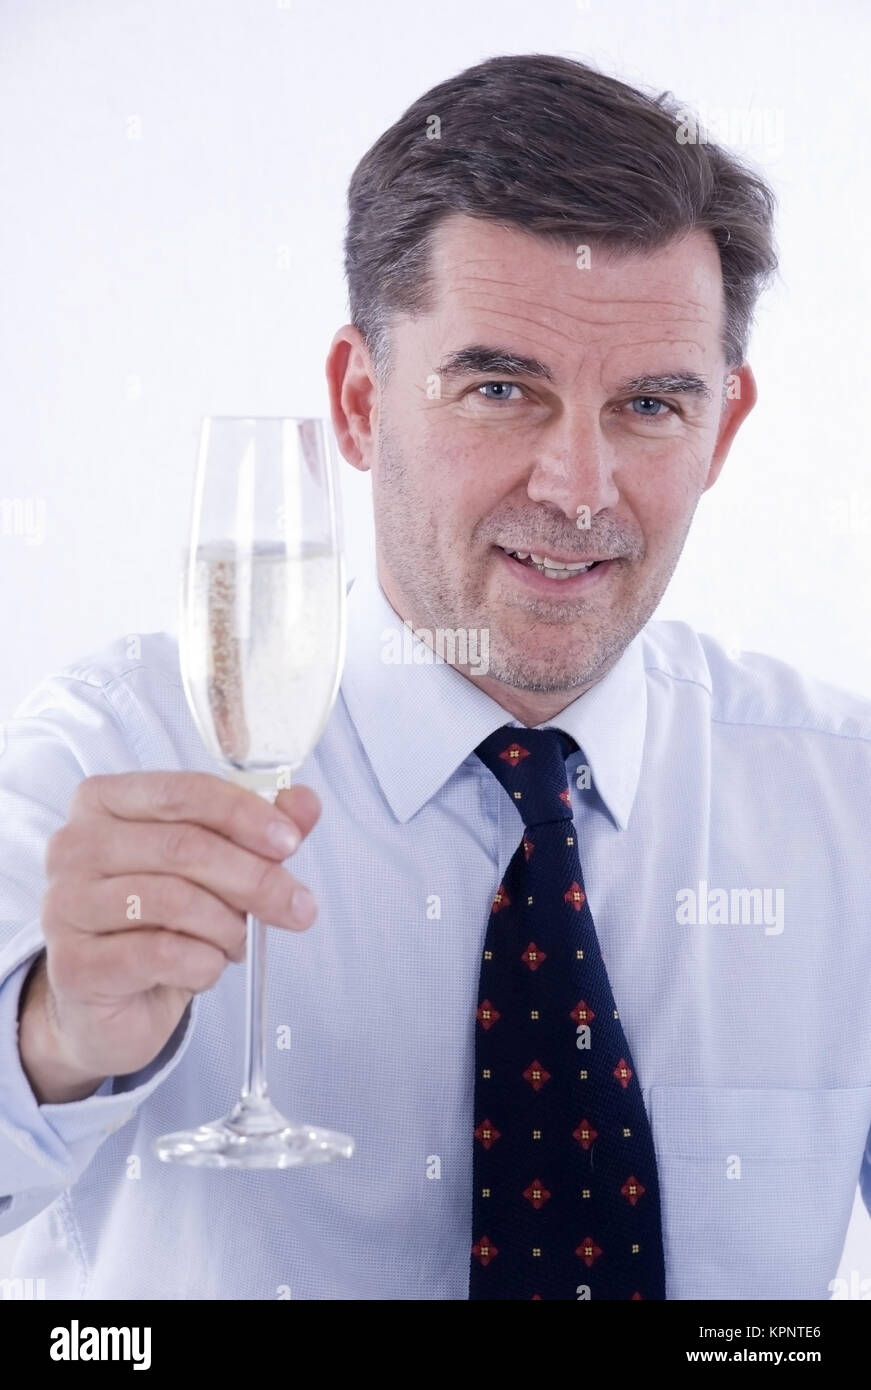 Model release , Geschaeftsmann mit einem Glas Sekt in der Hand - business  man drinks sparkling wine Stock Photo - Alamy